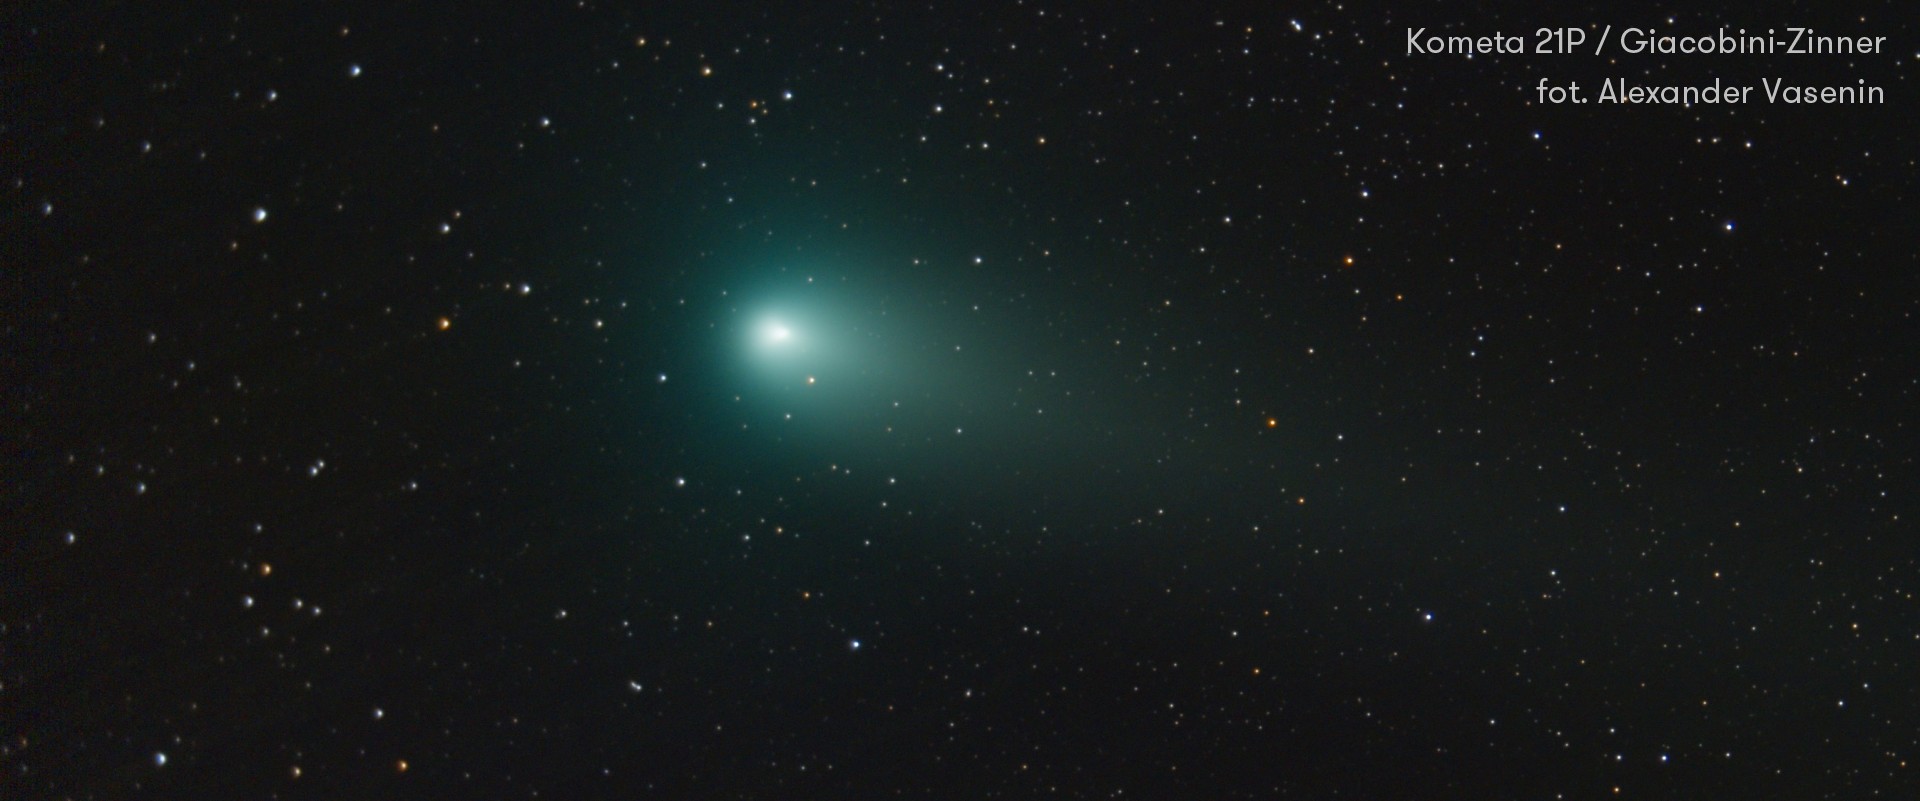 Kometa 21P / Giacobini-Zinner